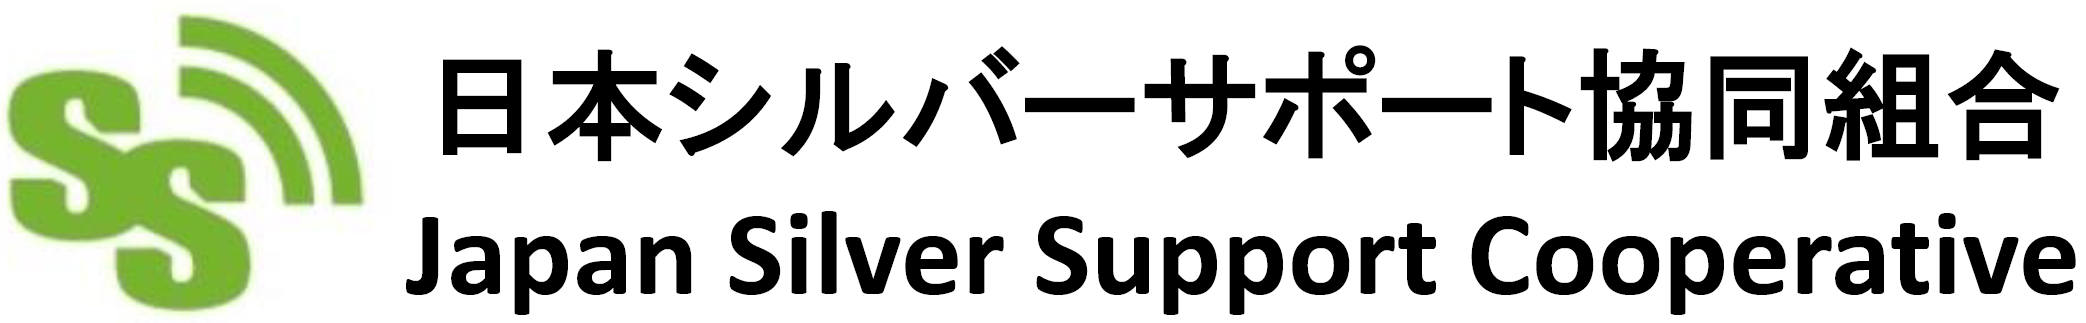 日本シルバーサポート協同組合